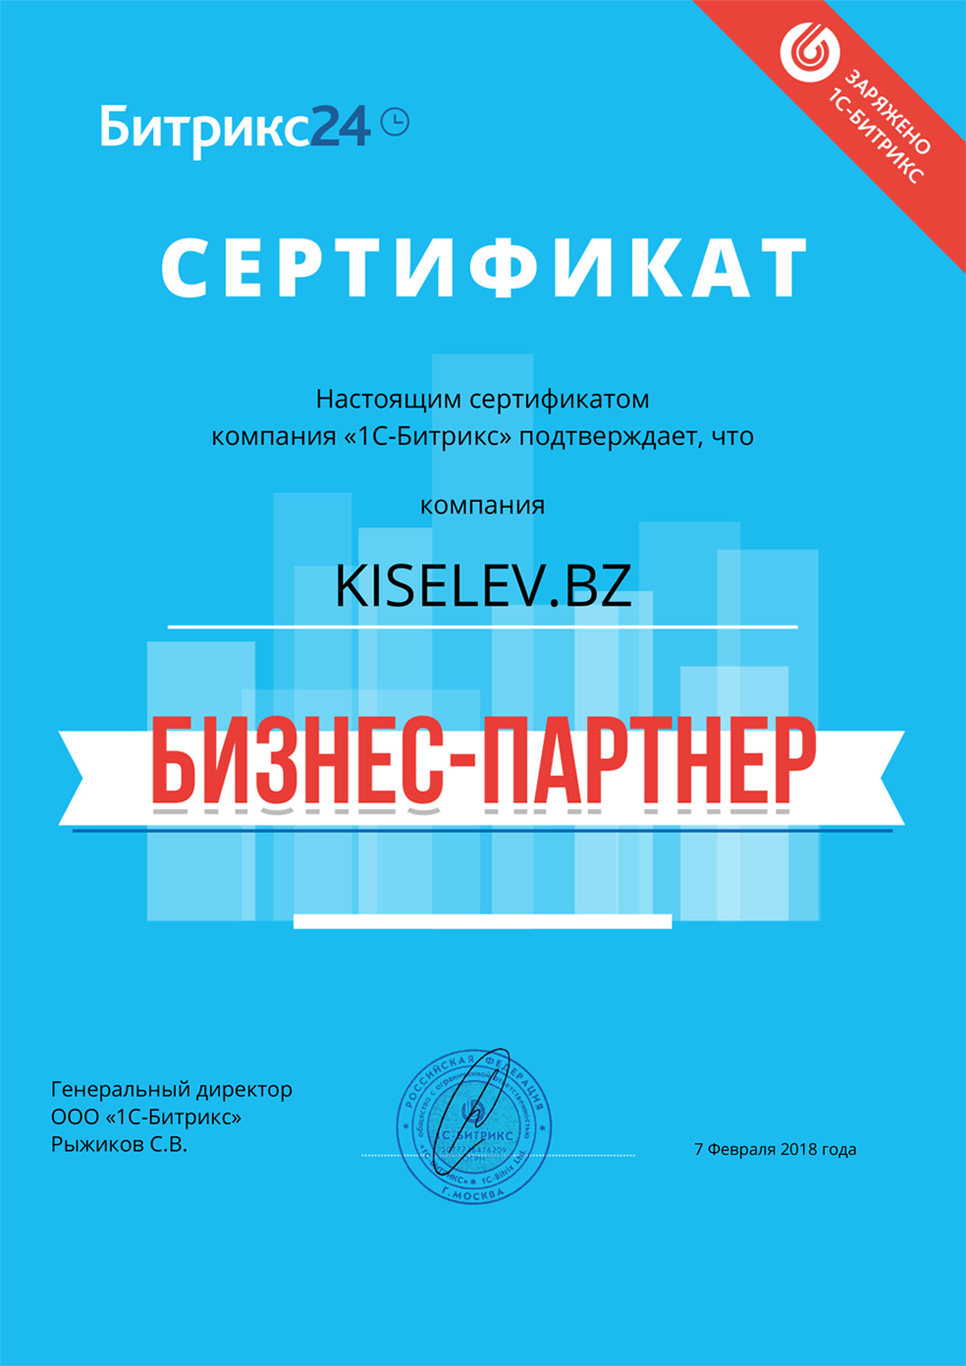 Сертификат партнёра по АМОСРМ в Малоархангельске